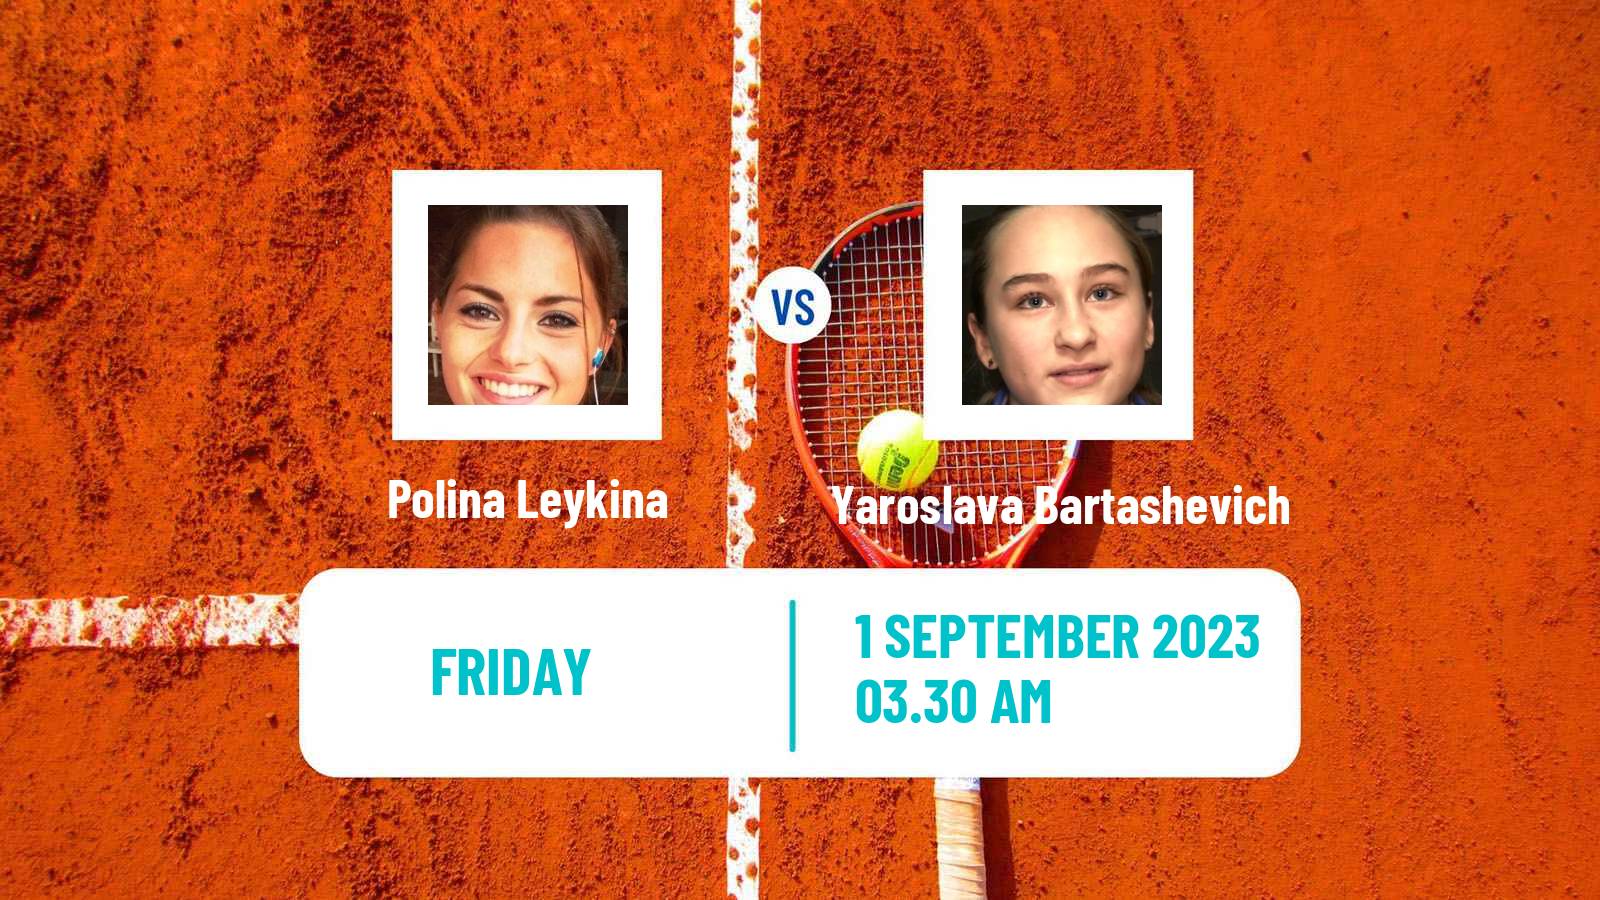 Tennis ITF W15 Baku 2 Women Polina Leykina - Yaroslava Bartashevich